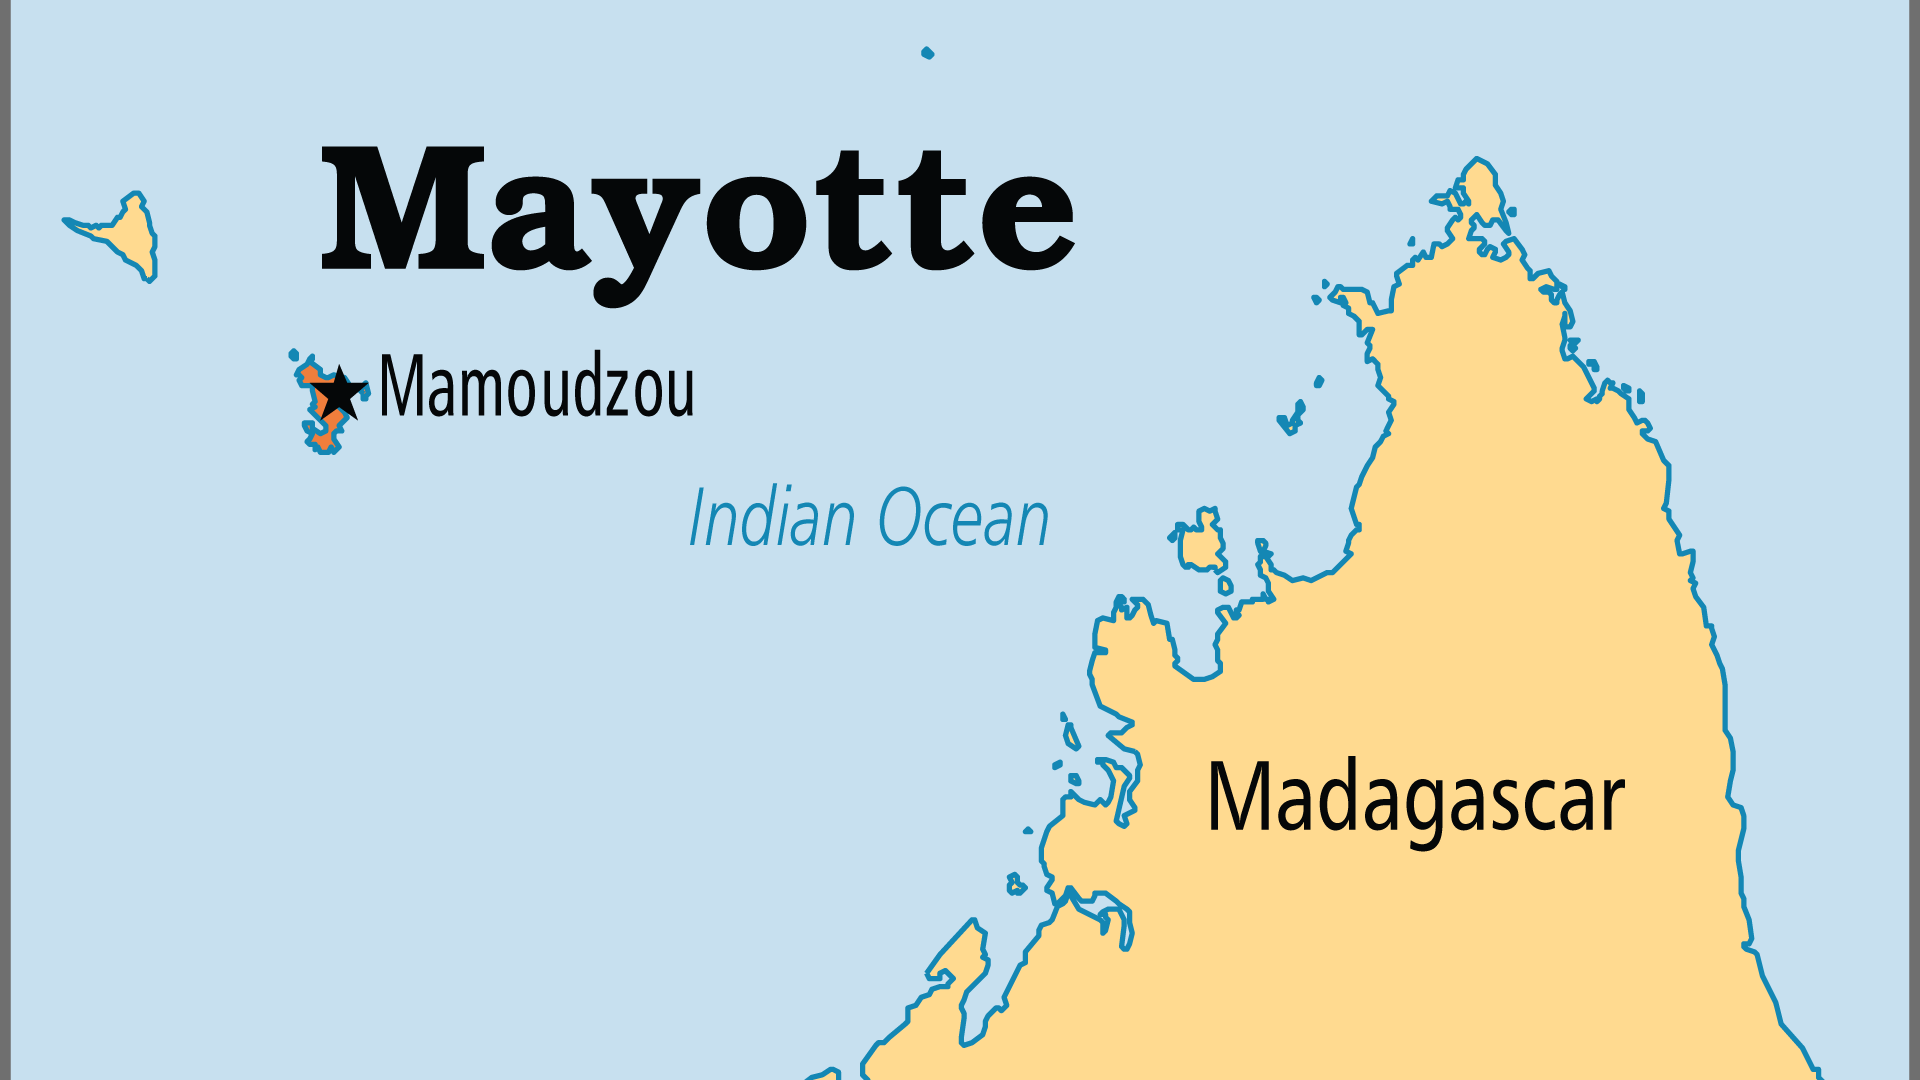 Mayotte (Operation World)